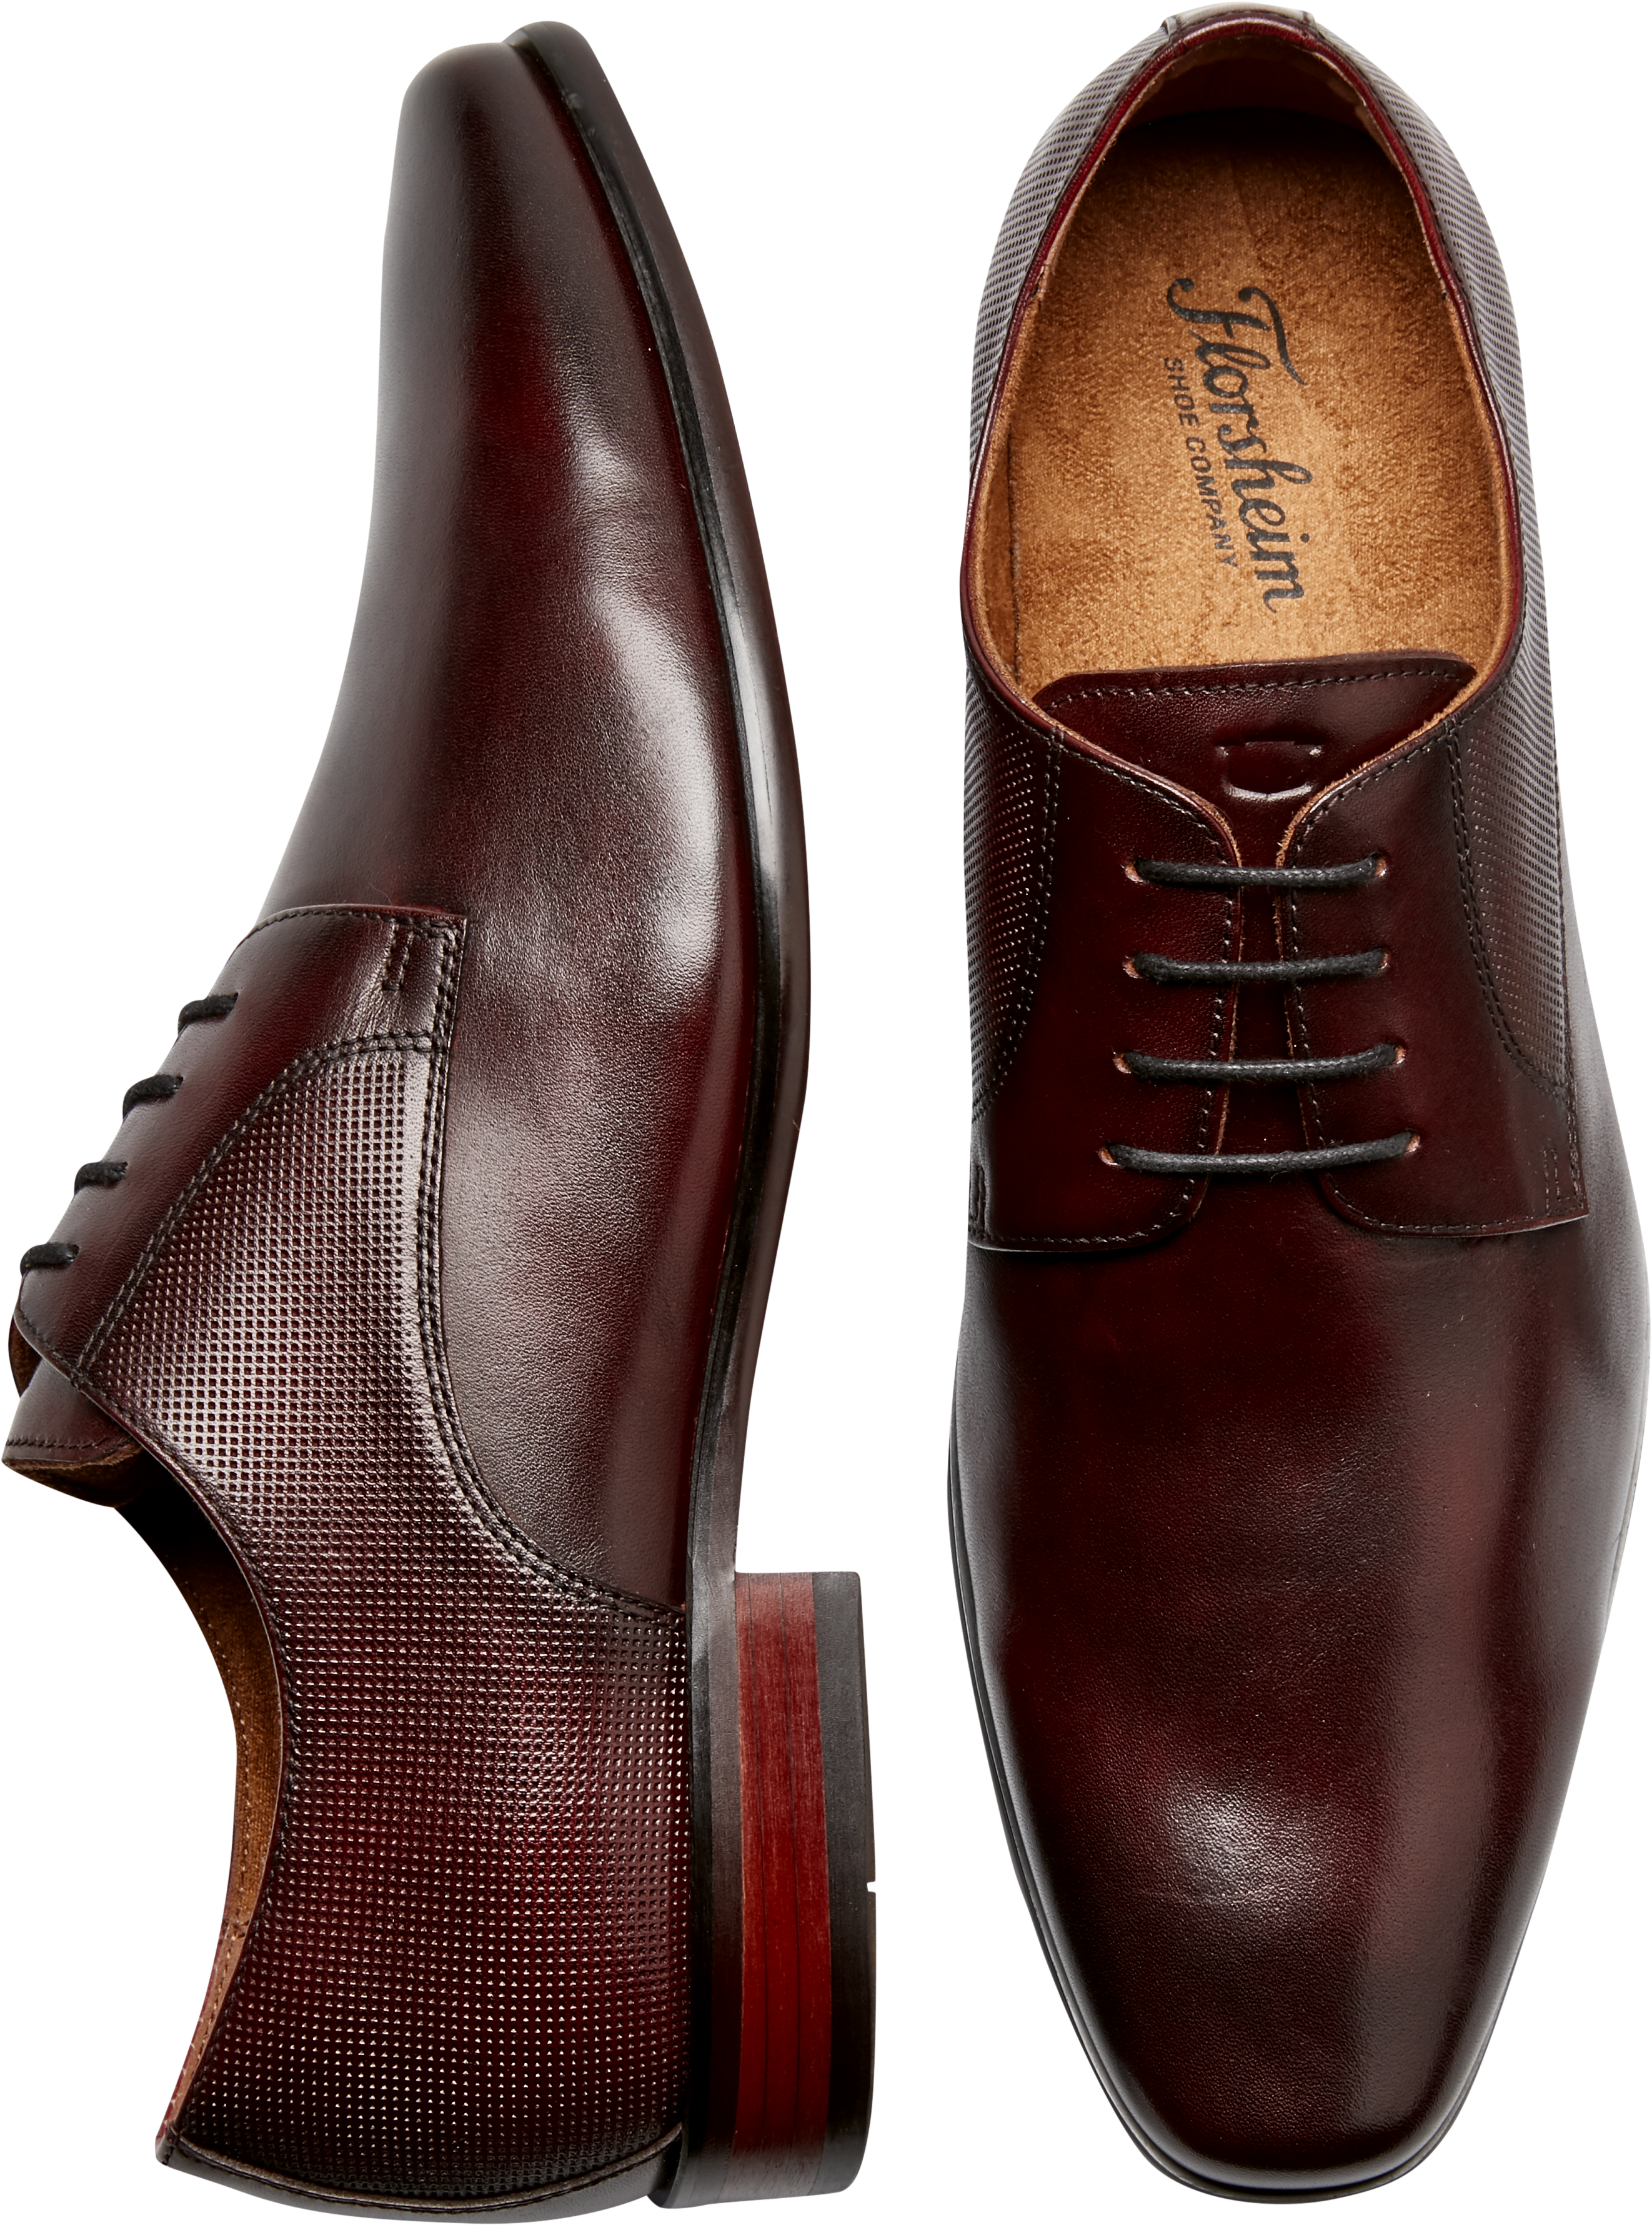 Florsheim Kierland Plain Toe Oxfords, Burgundy - Men's Shoes | Men's Wearhouse